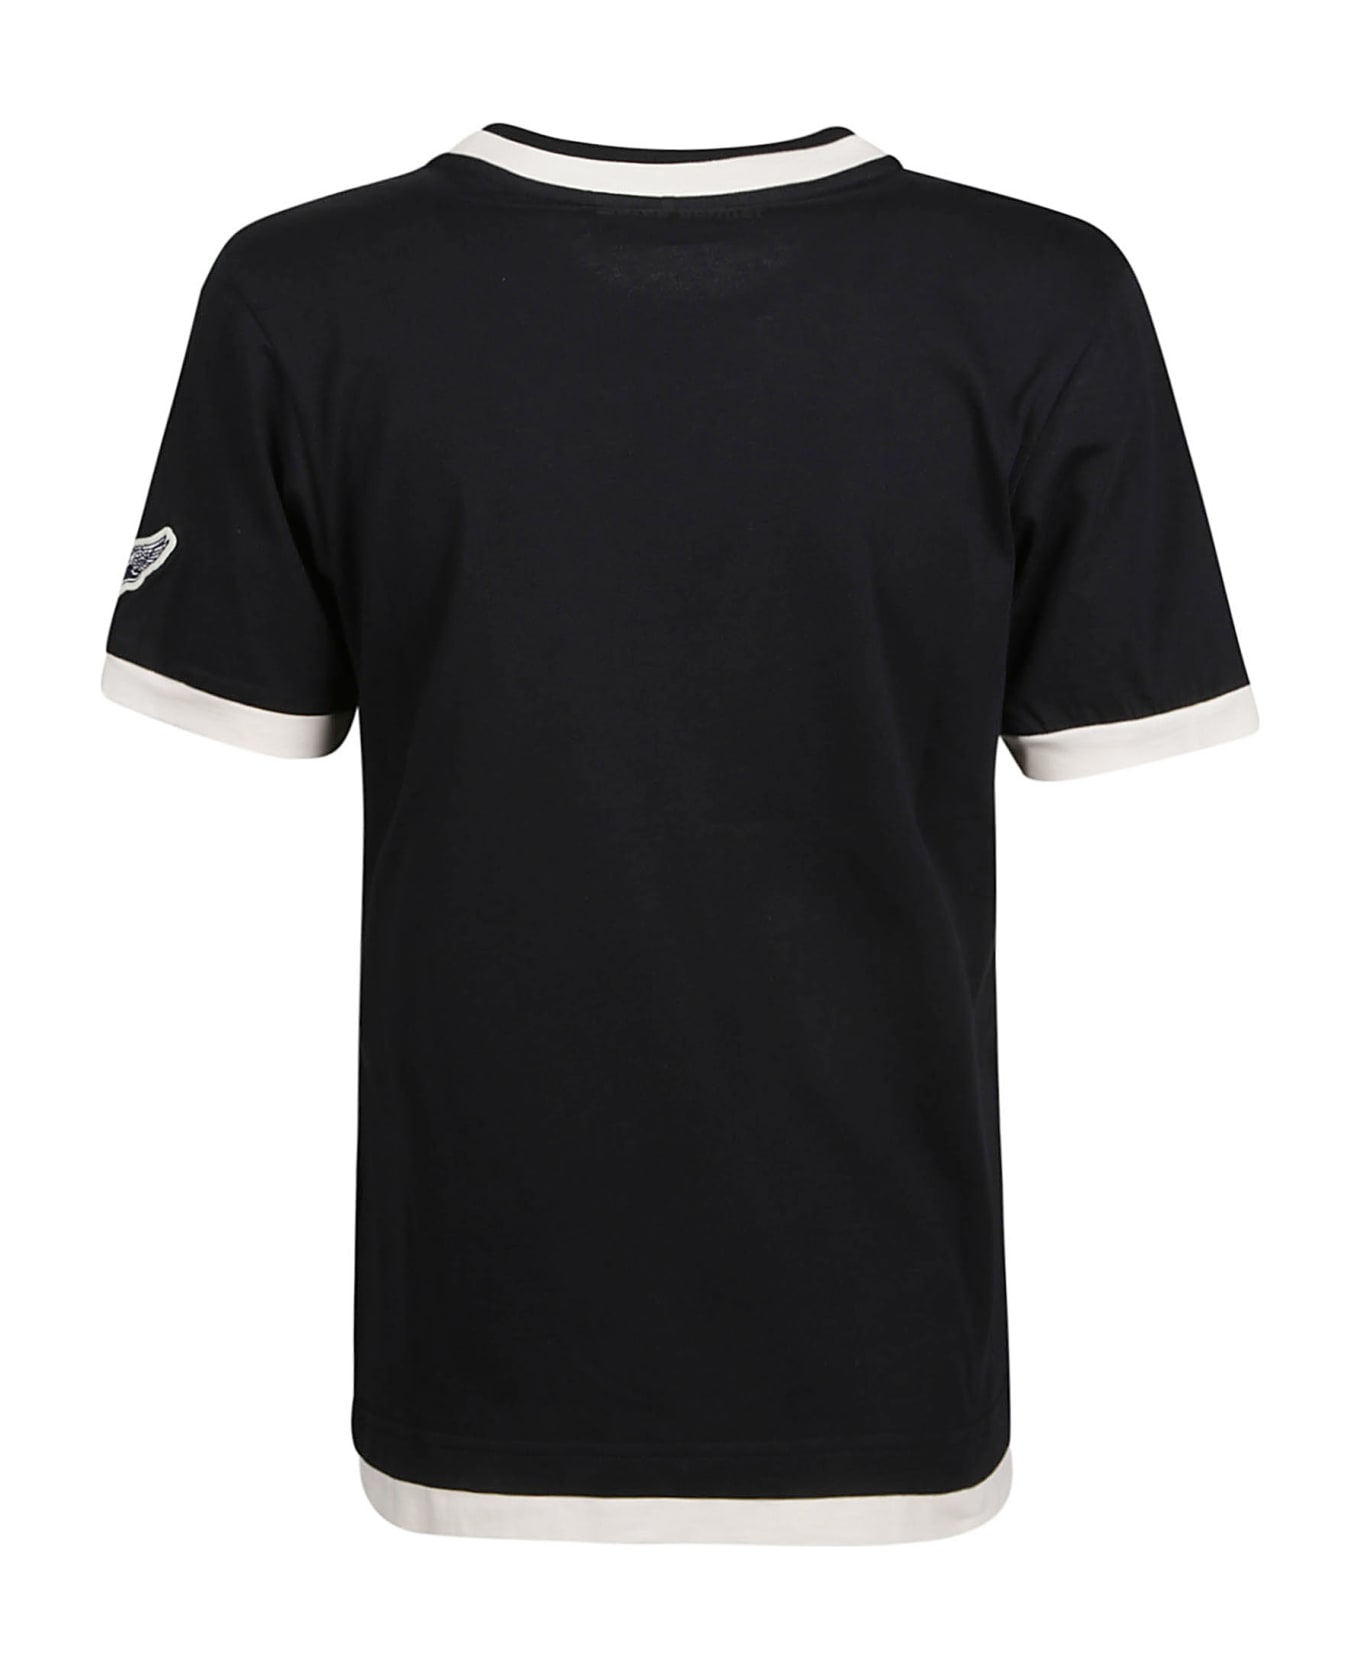 Wales Bonner Plain Horizon T-shirt - Black